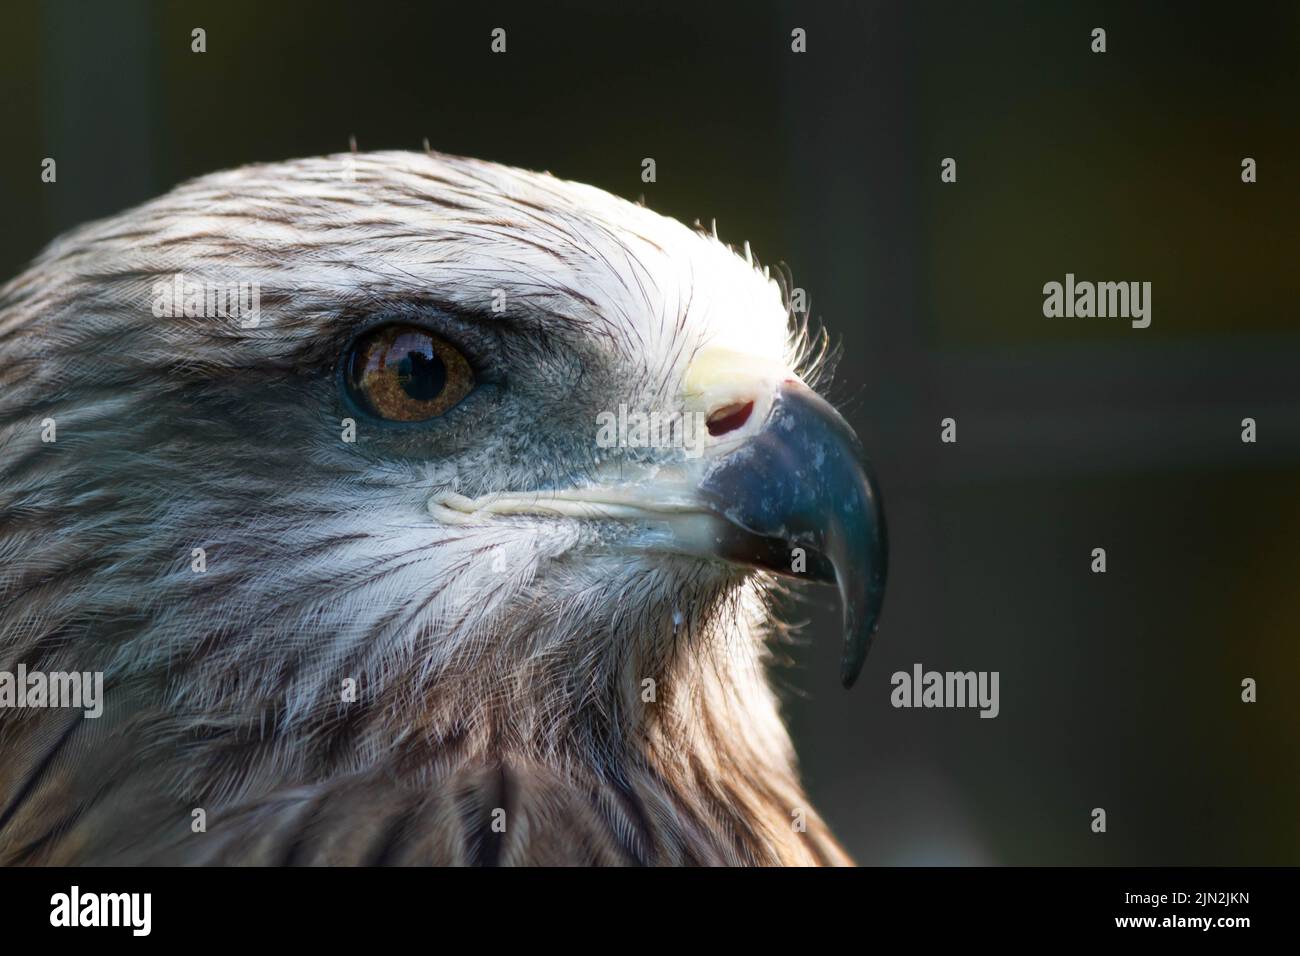 Aquila americana allo zoo. Falco in cattività. Uccello della famiglia dei falchi. Simbolo americano della nazione. Foto Stock